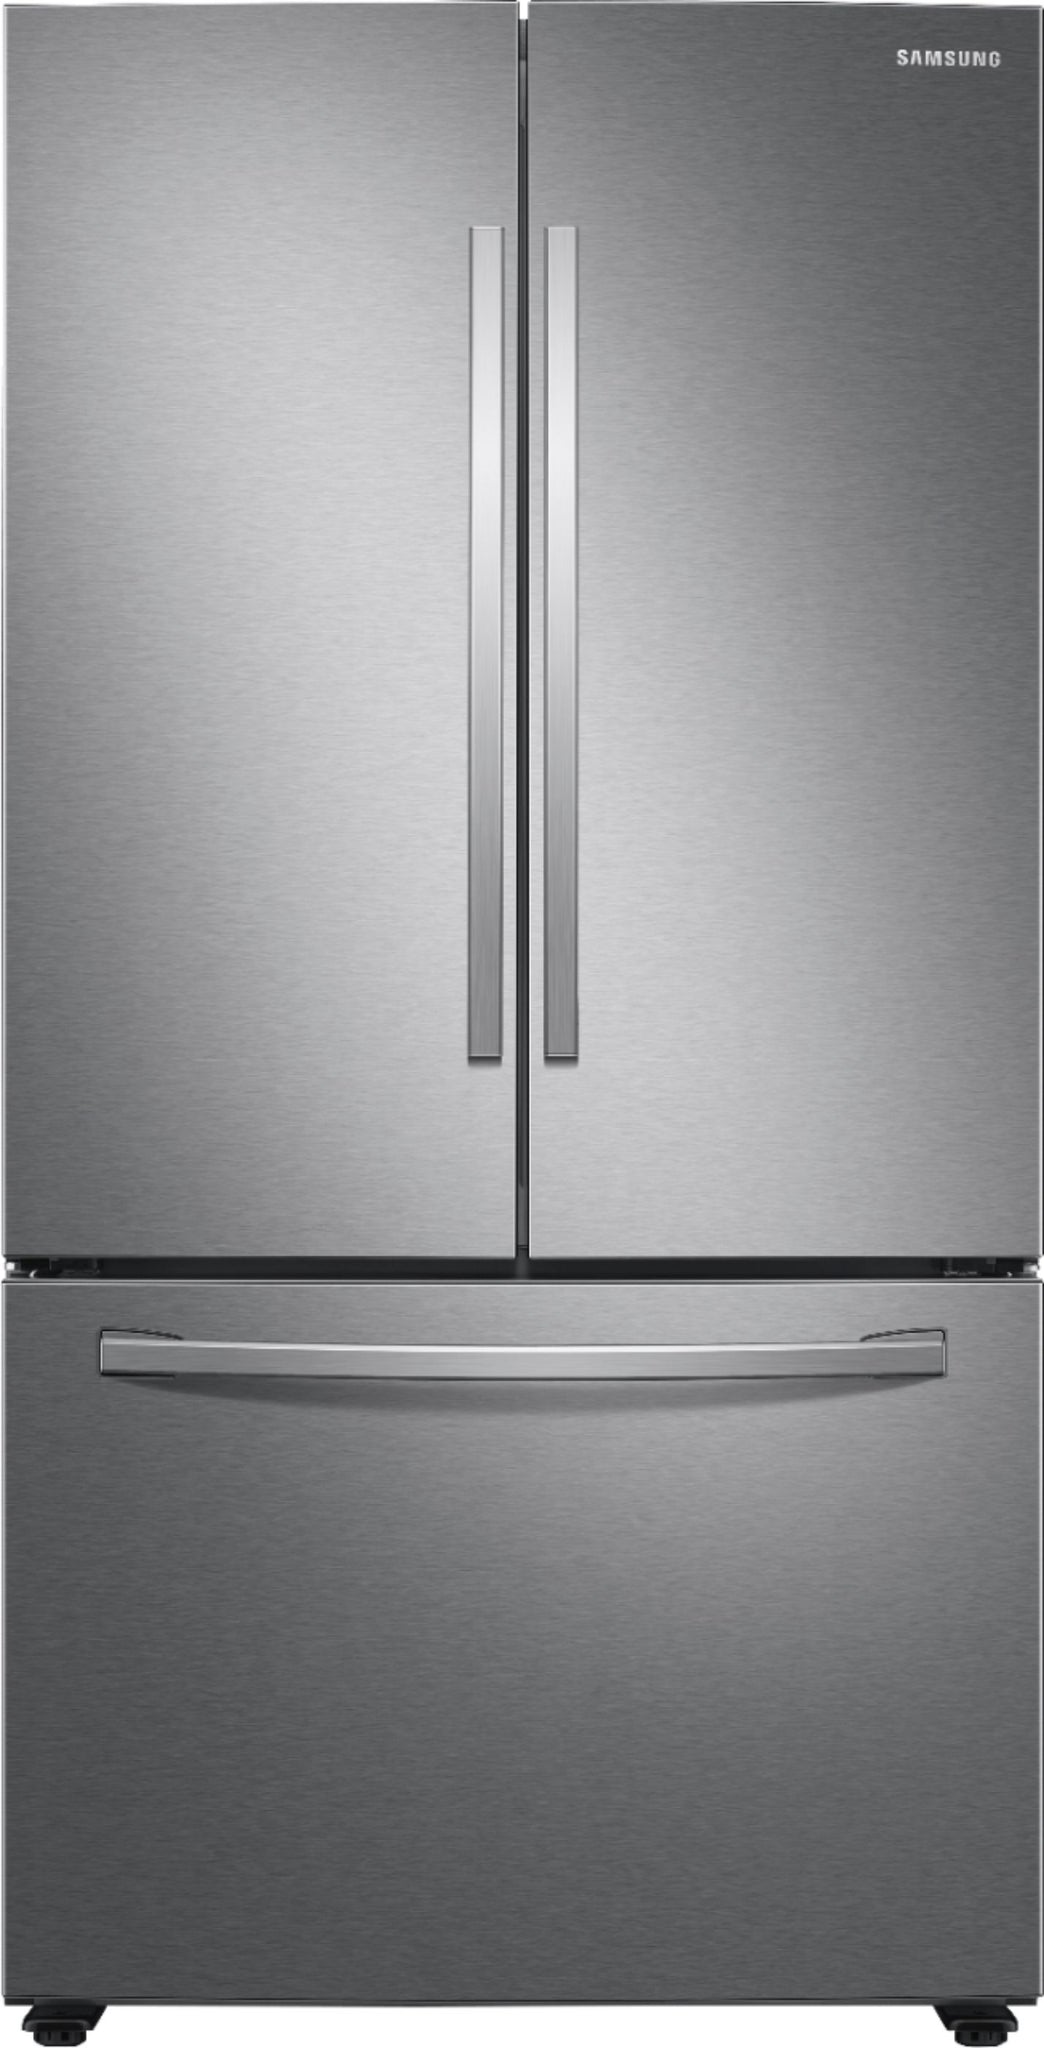 Samsung - 28 cu. ft. Large Capacity 3-Door French Door Refrigerator - Fingerprint Resistant Stainless Steel  - RF28T5001SR